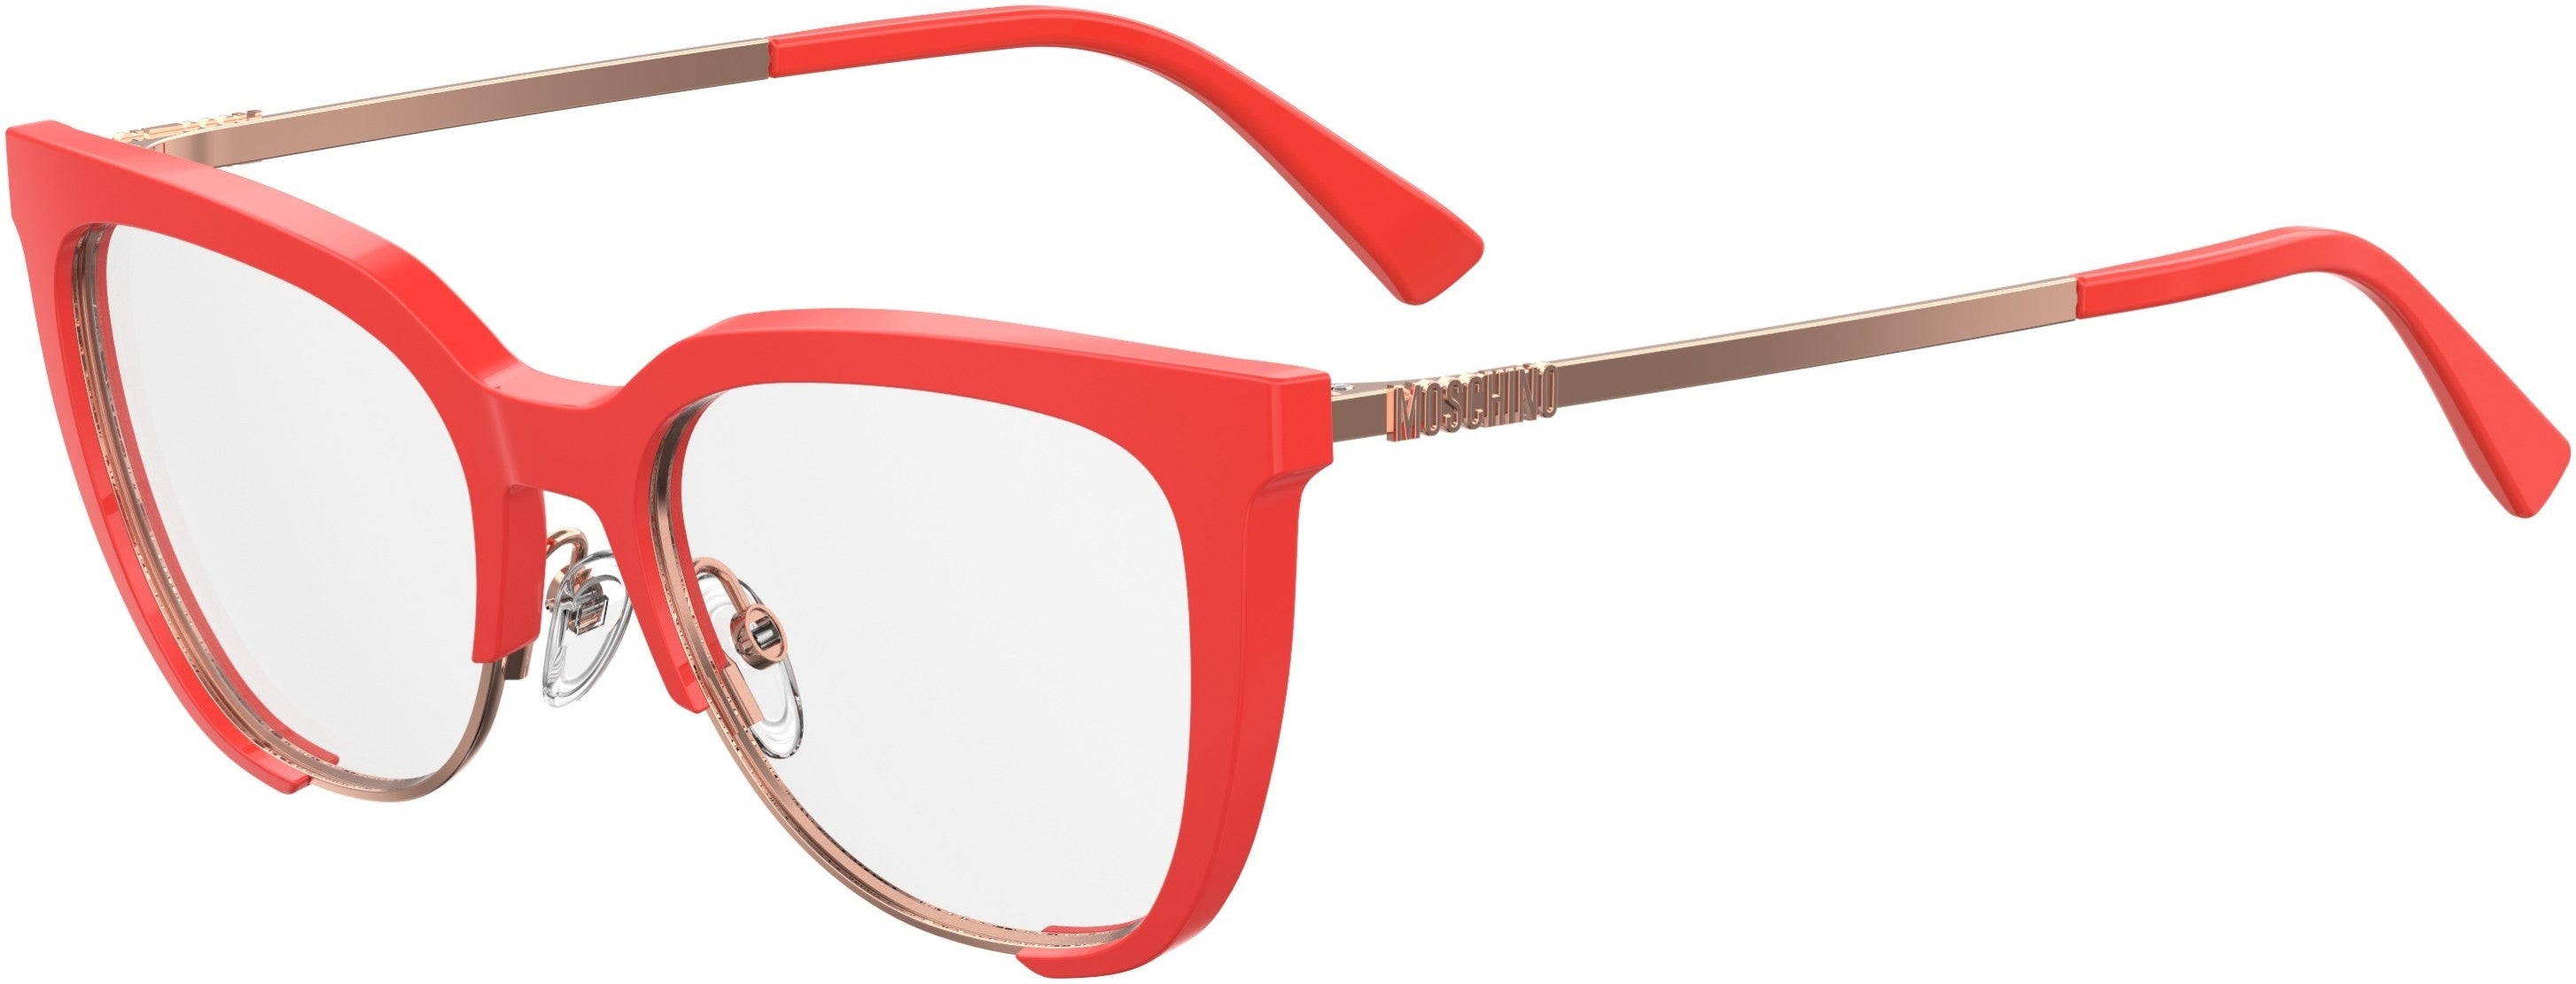  Moschino 530 Square Eyeglasses 01N5-01N5  Coral (00 Demo Lens)